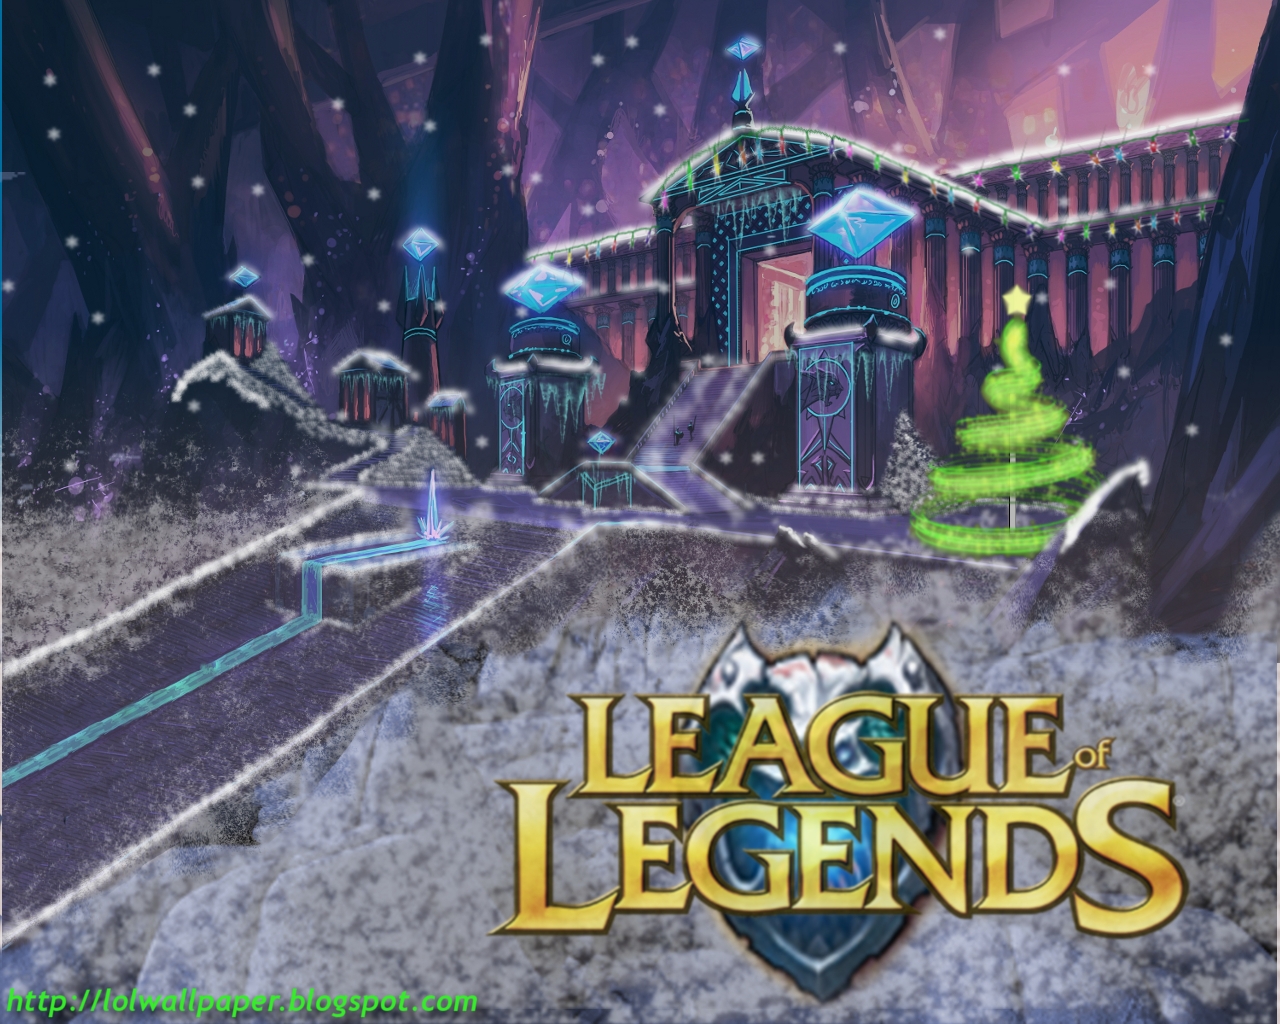 League of Legends Wallpaper: League of Legends Christmas Wallpaper1280 x 1024